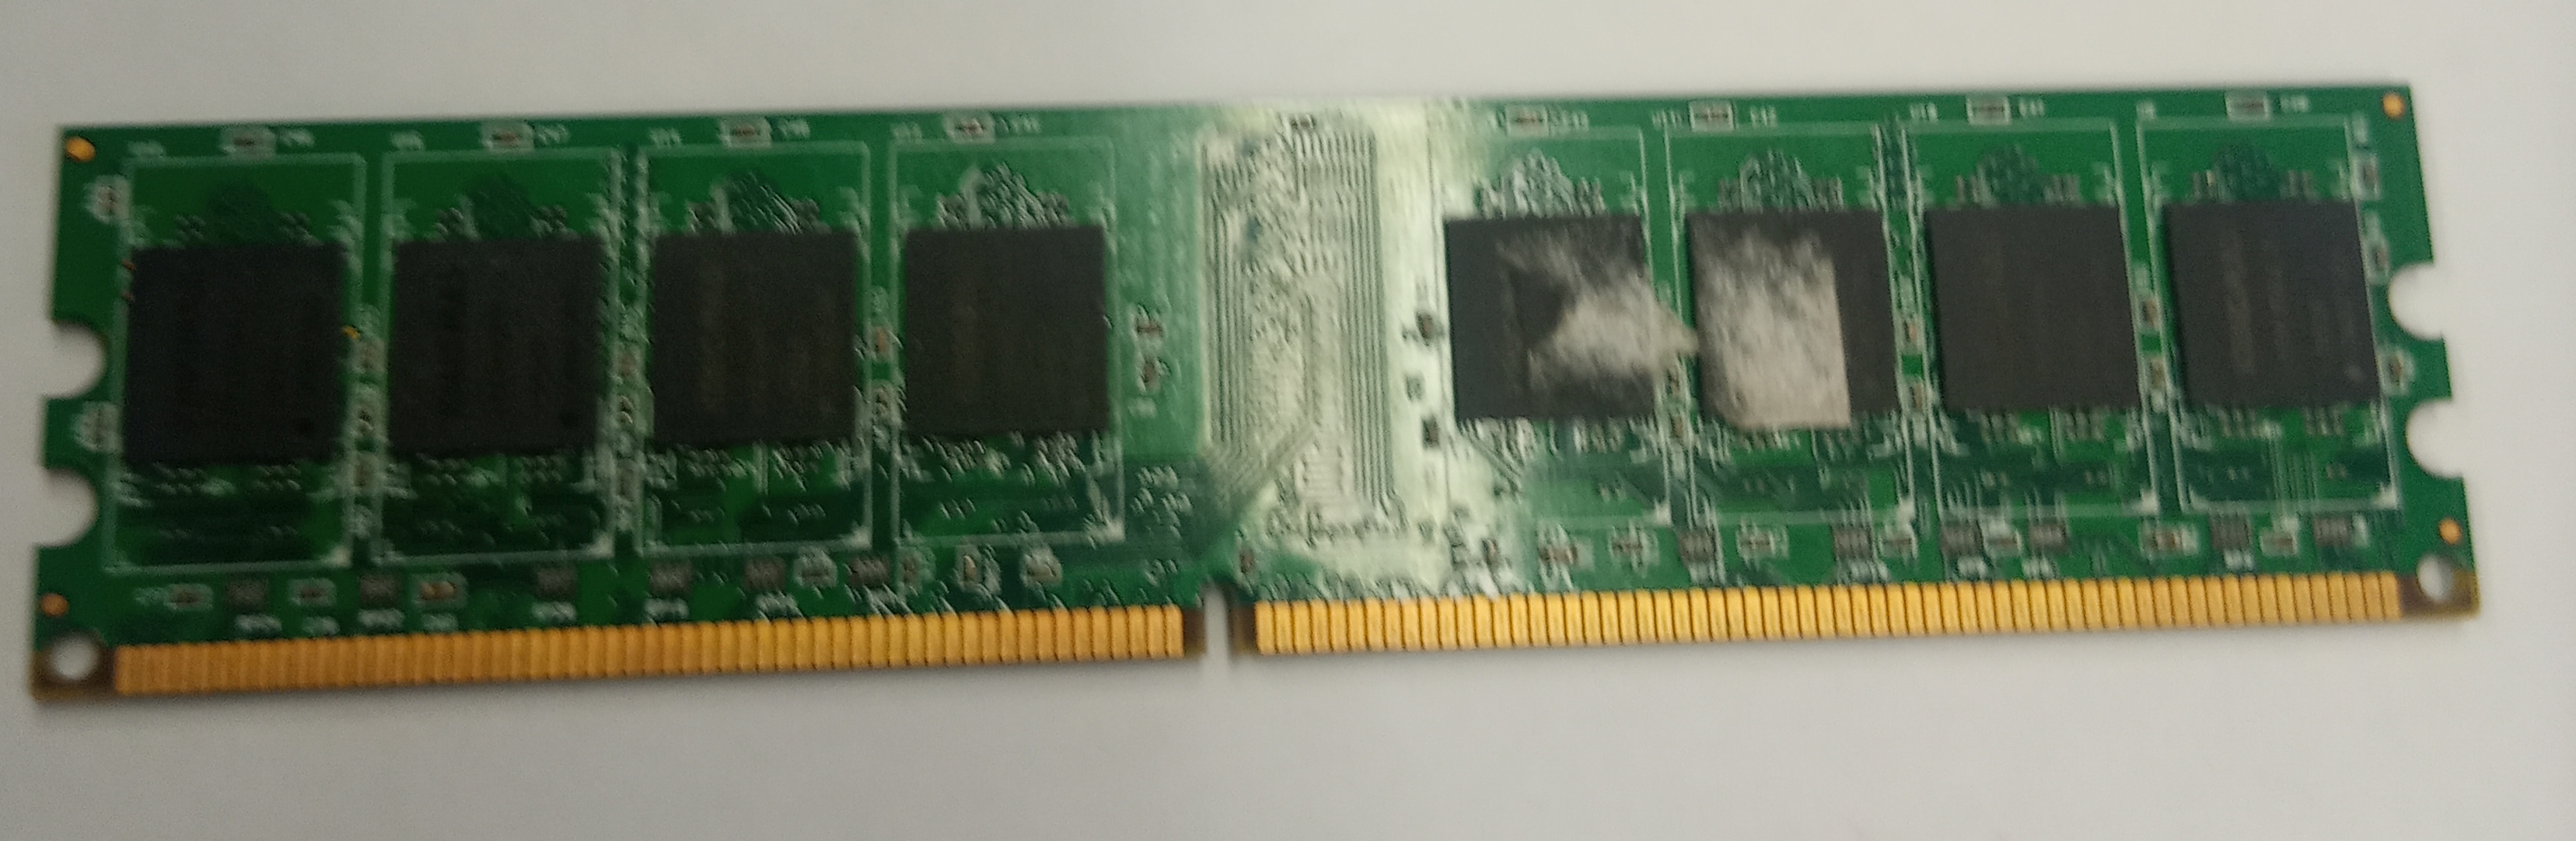 Kingston 1GB DDR2 RAM, 800MHz




Kingston 1GB DDR2 RAM, 800MHz
Működik, kipróbáltam, garancia nincs.

Kapacitás: 
Sebesség: 800MHz
Típus: DDR2
gyártó: Kingmax

490ft 80%